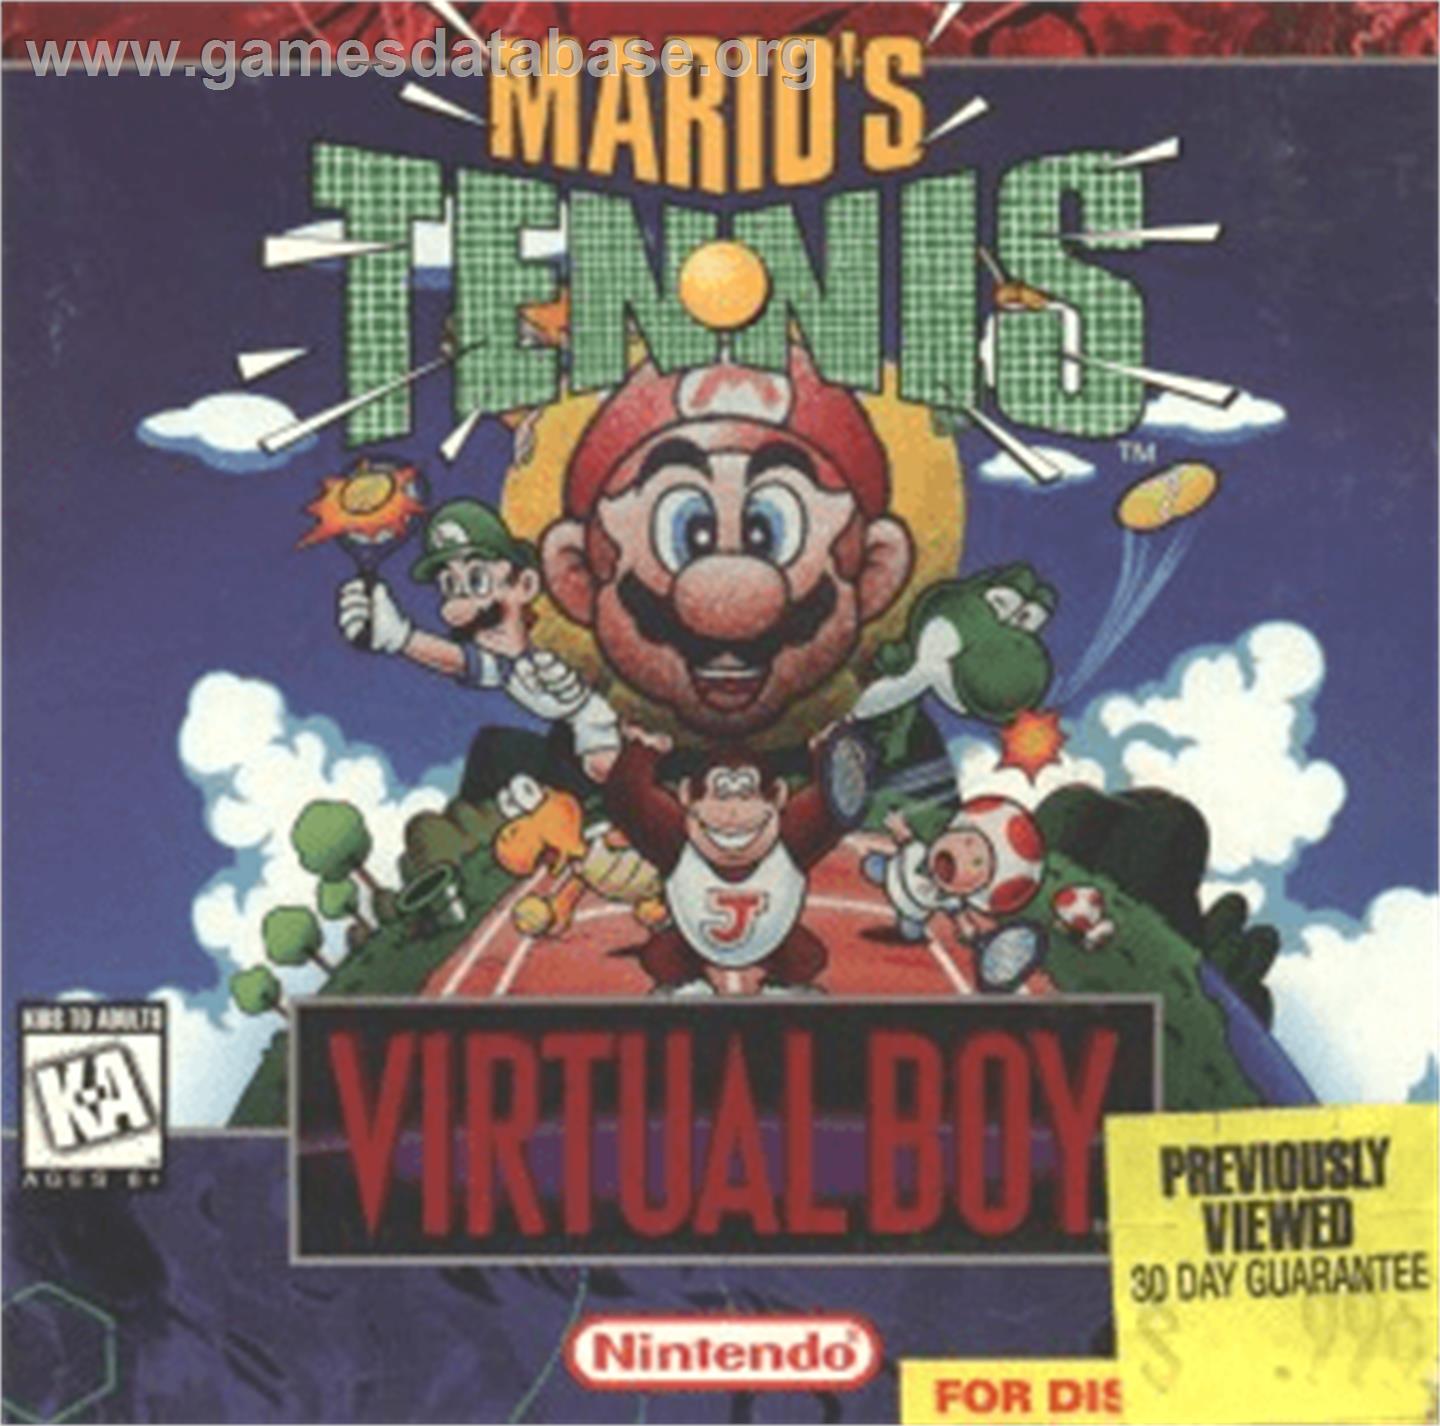 Mario's Tennis - Nintendo Virtual Boy - Artwork - Box